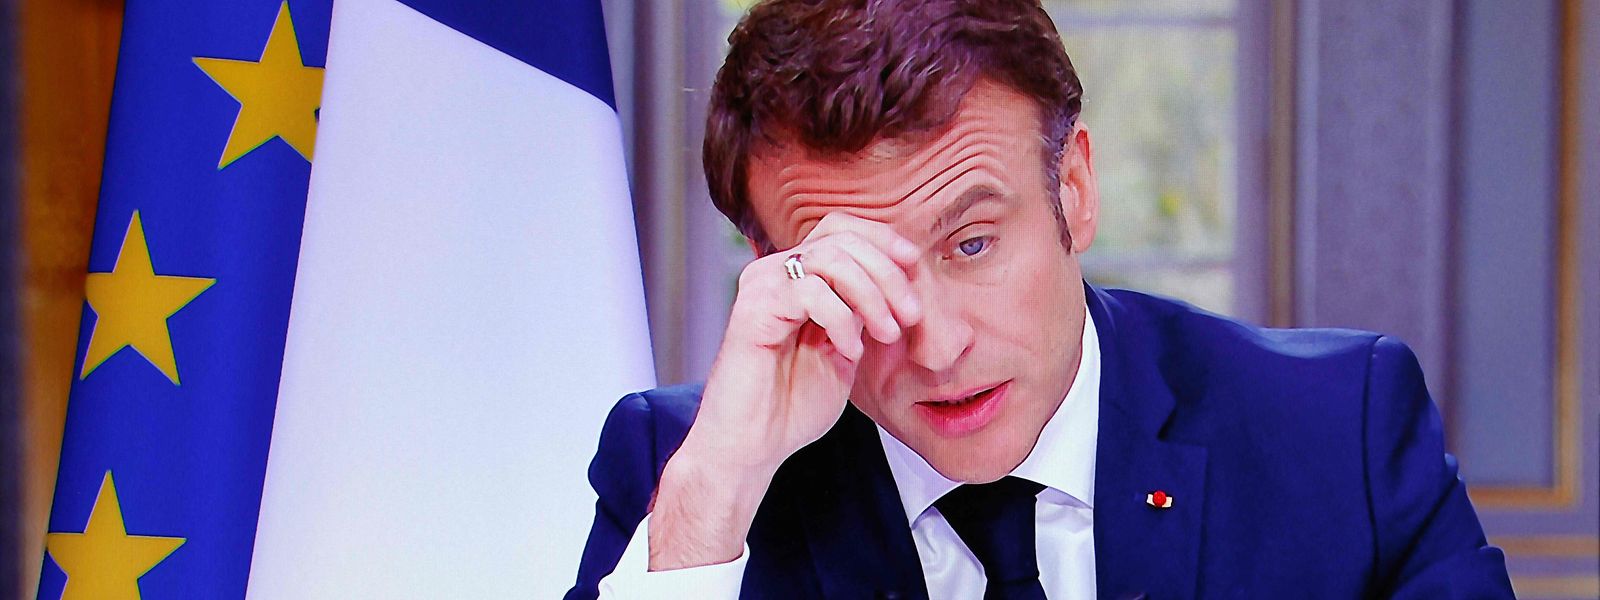 Der französische Präsident Emmanuel Macron will noch in diesem Jahr die in Frankreich umstrittene Rentenreform in Kraft setzen. Zuvor hatte er die Reform mithilfe des Verfassungsartikels 49.3 ohne Parlamentsvotum durchgedrückt.